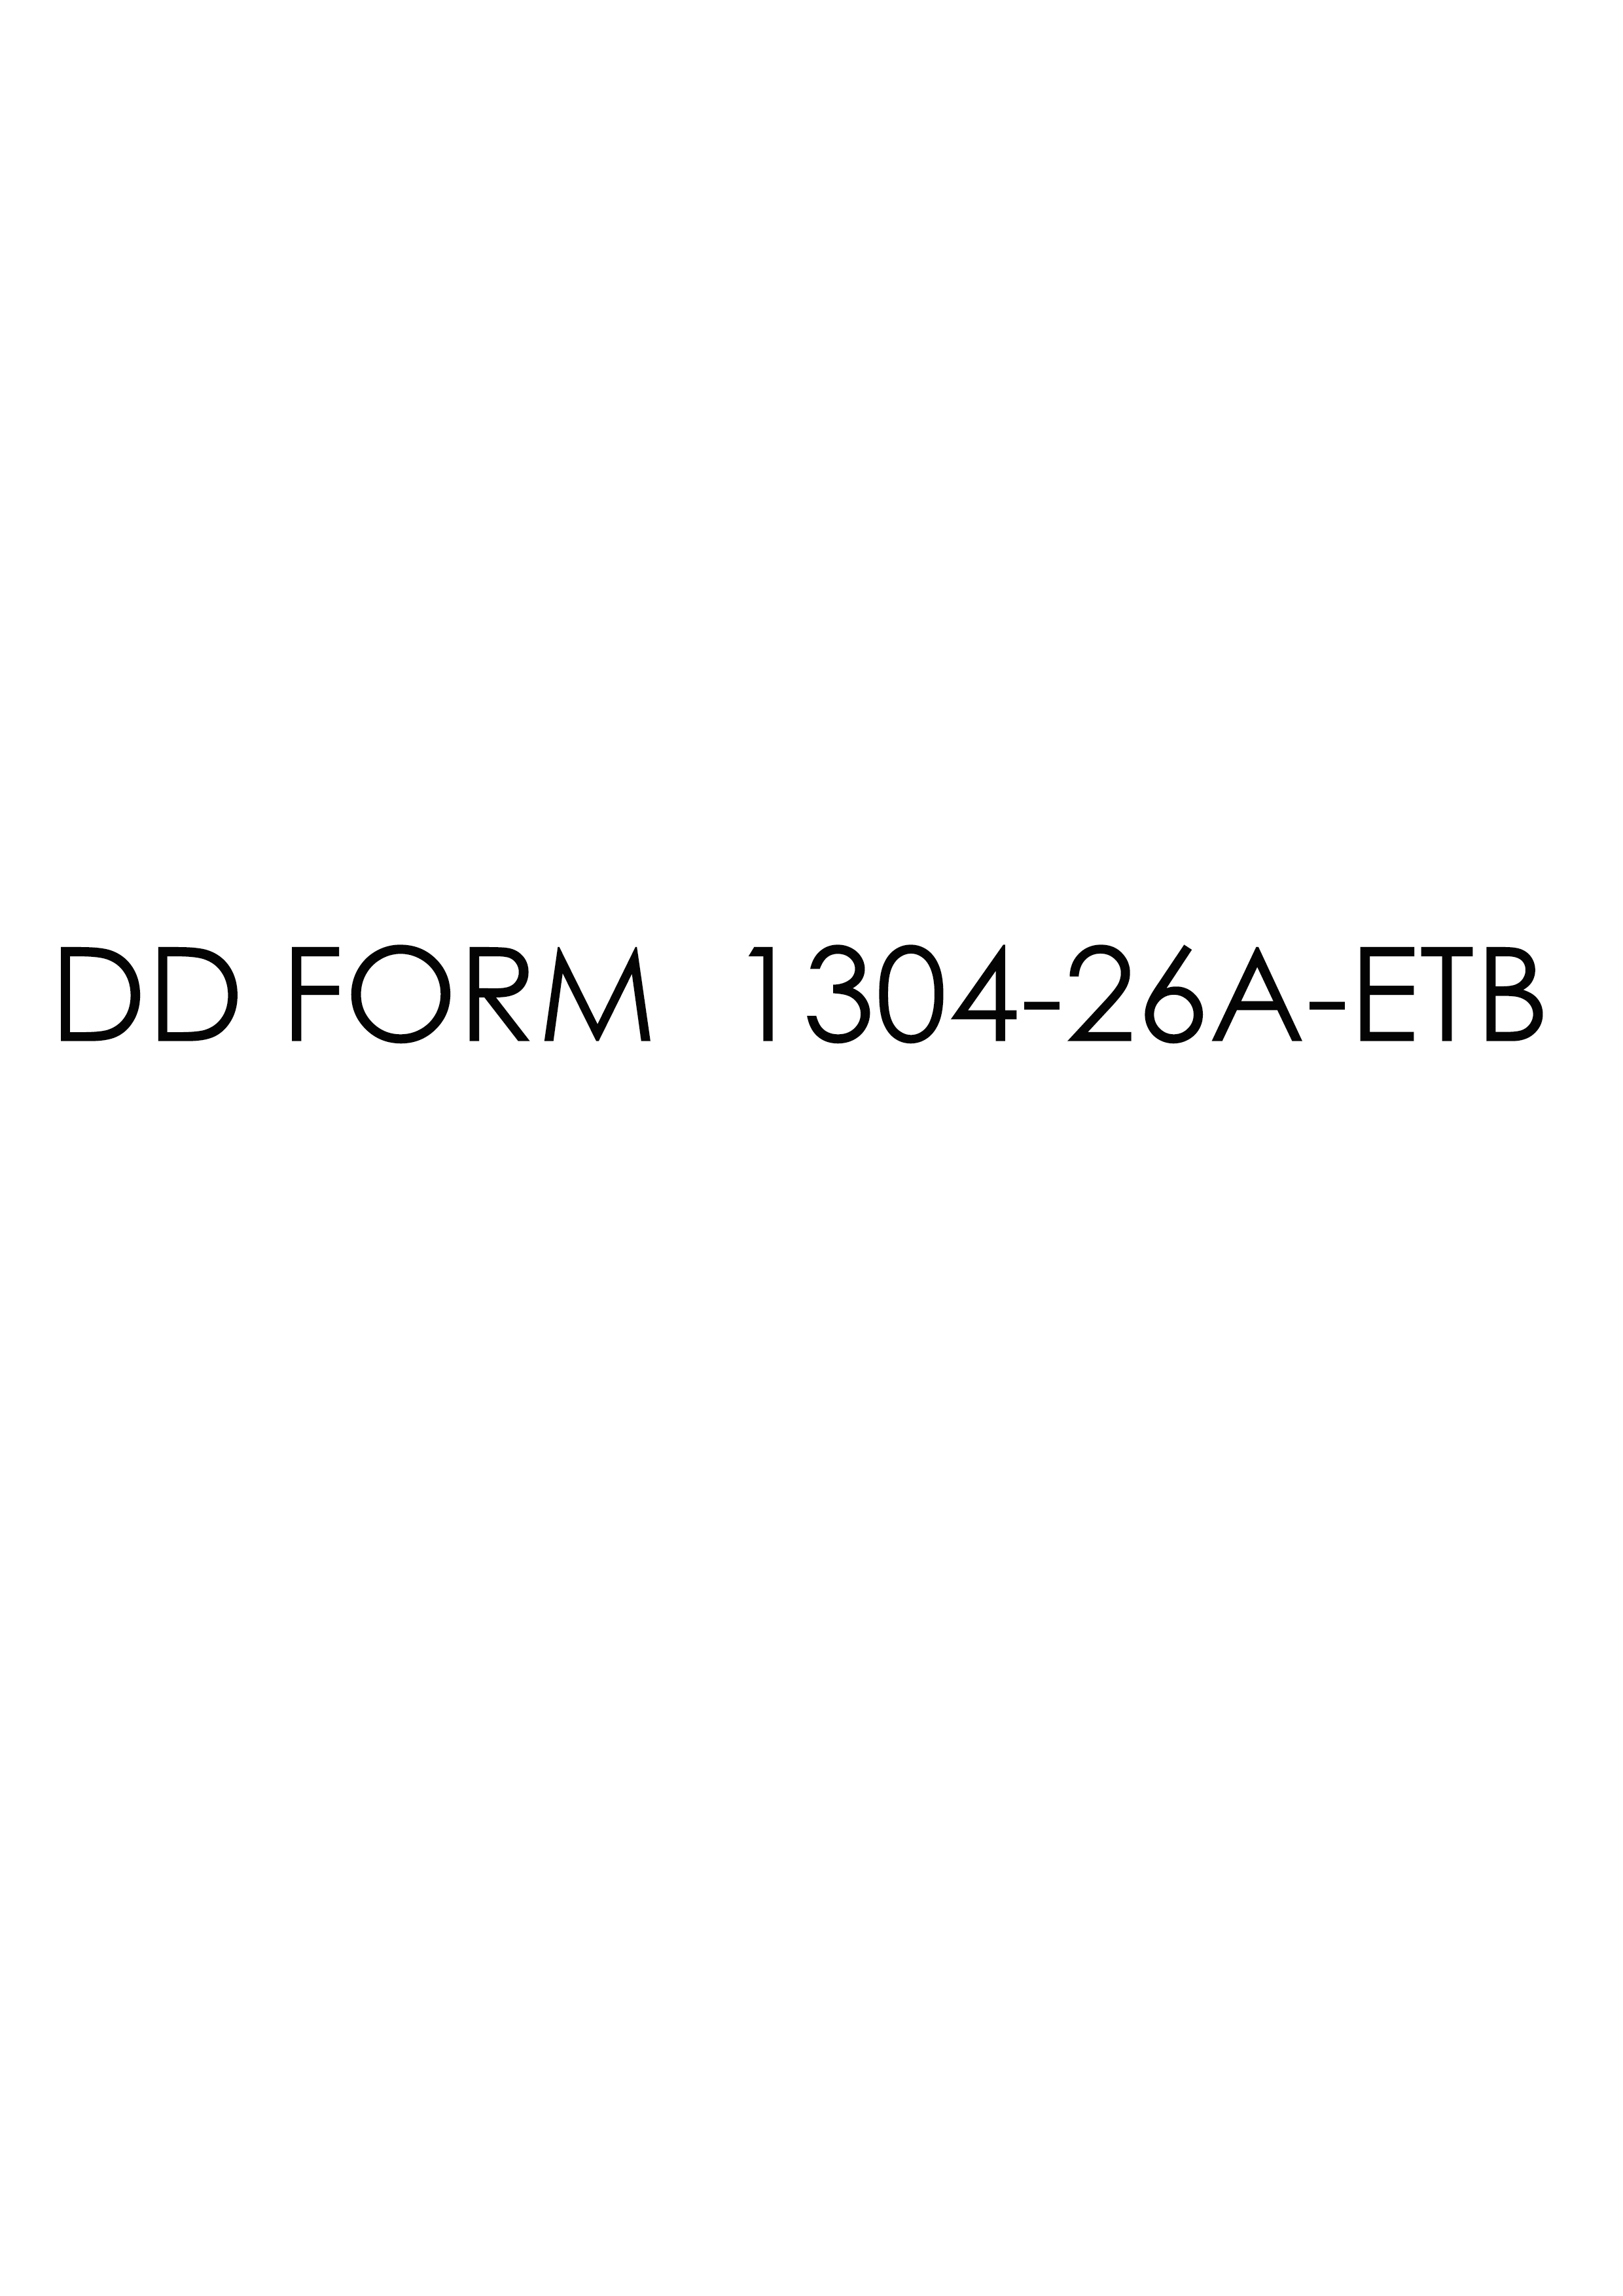 Download dd Form 1304-26A-ETB